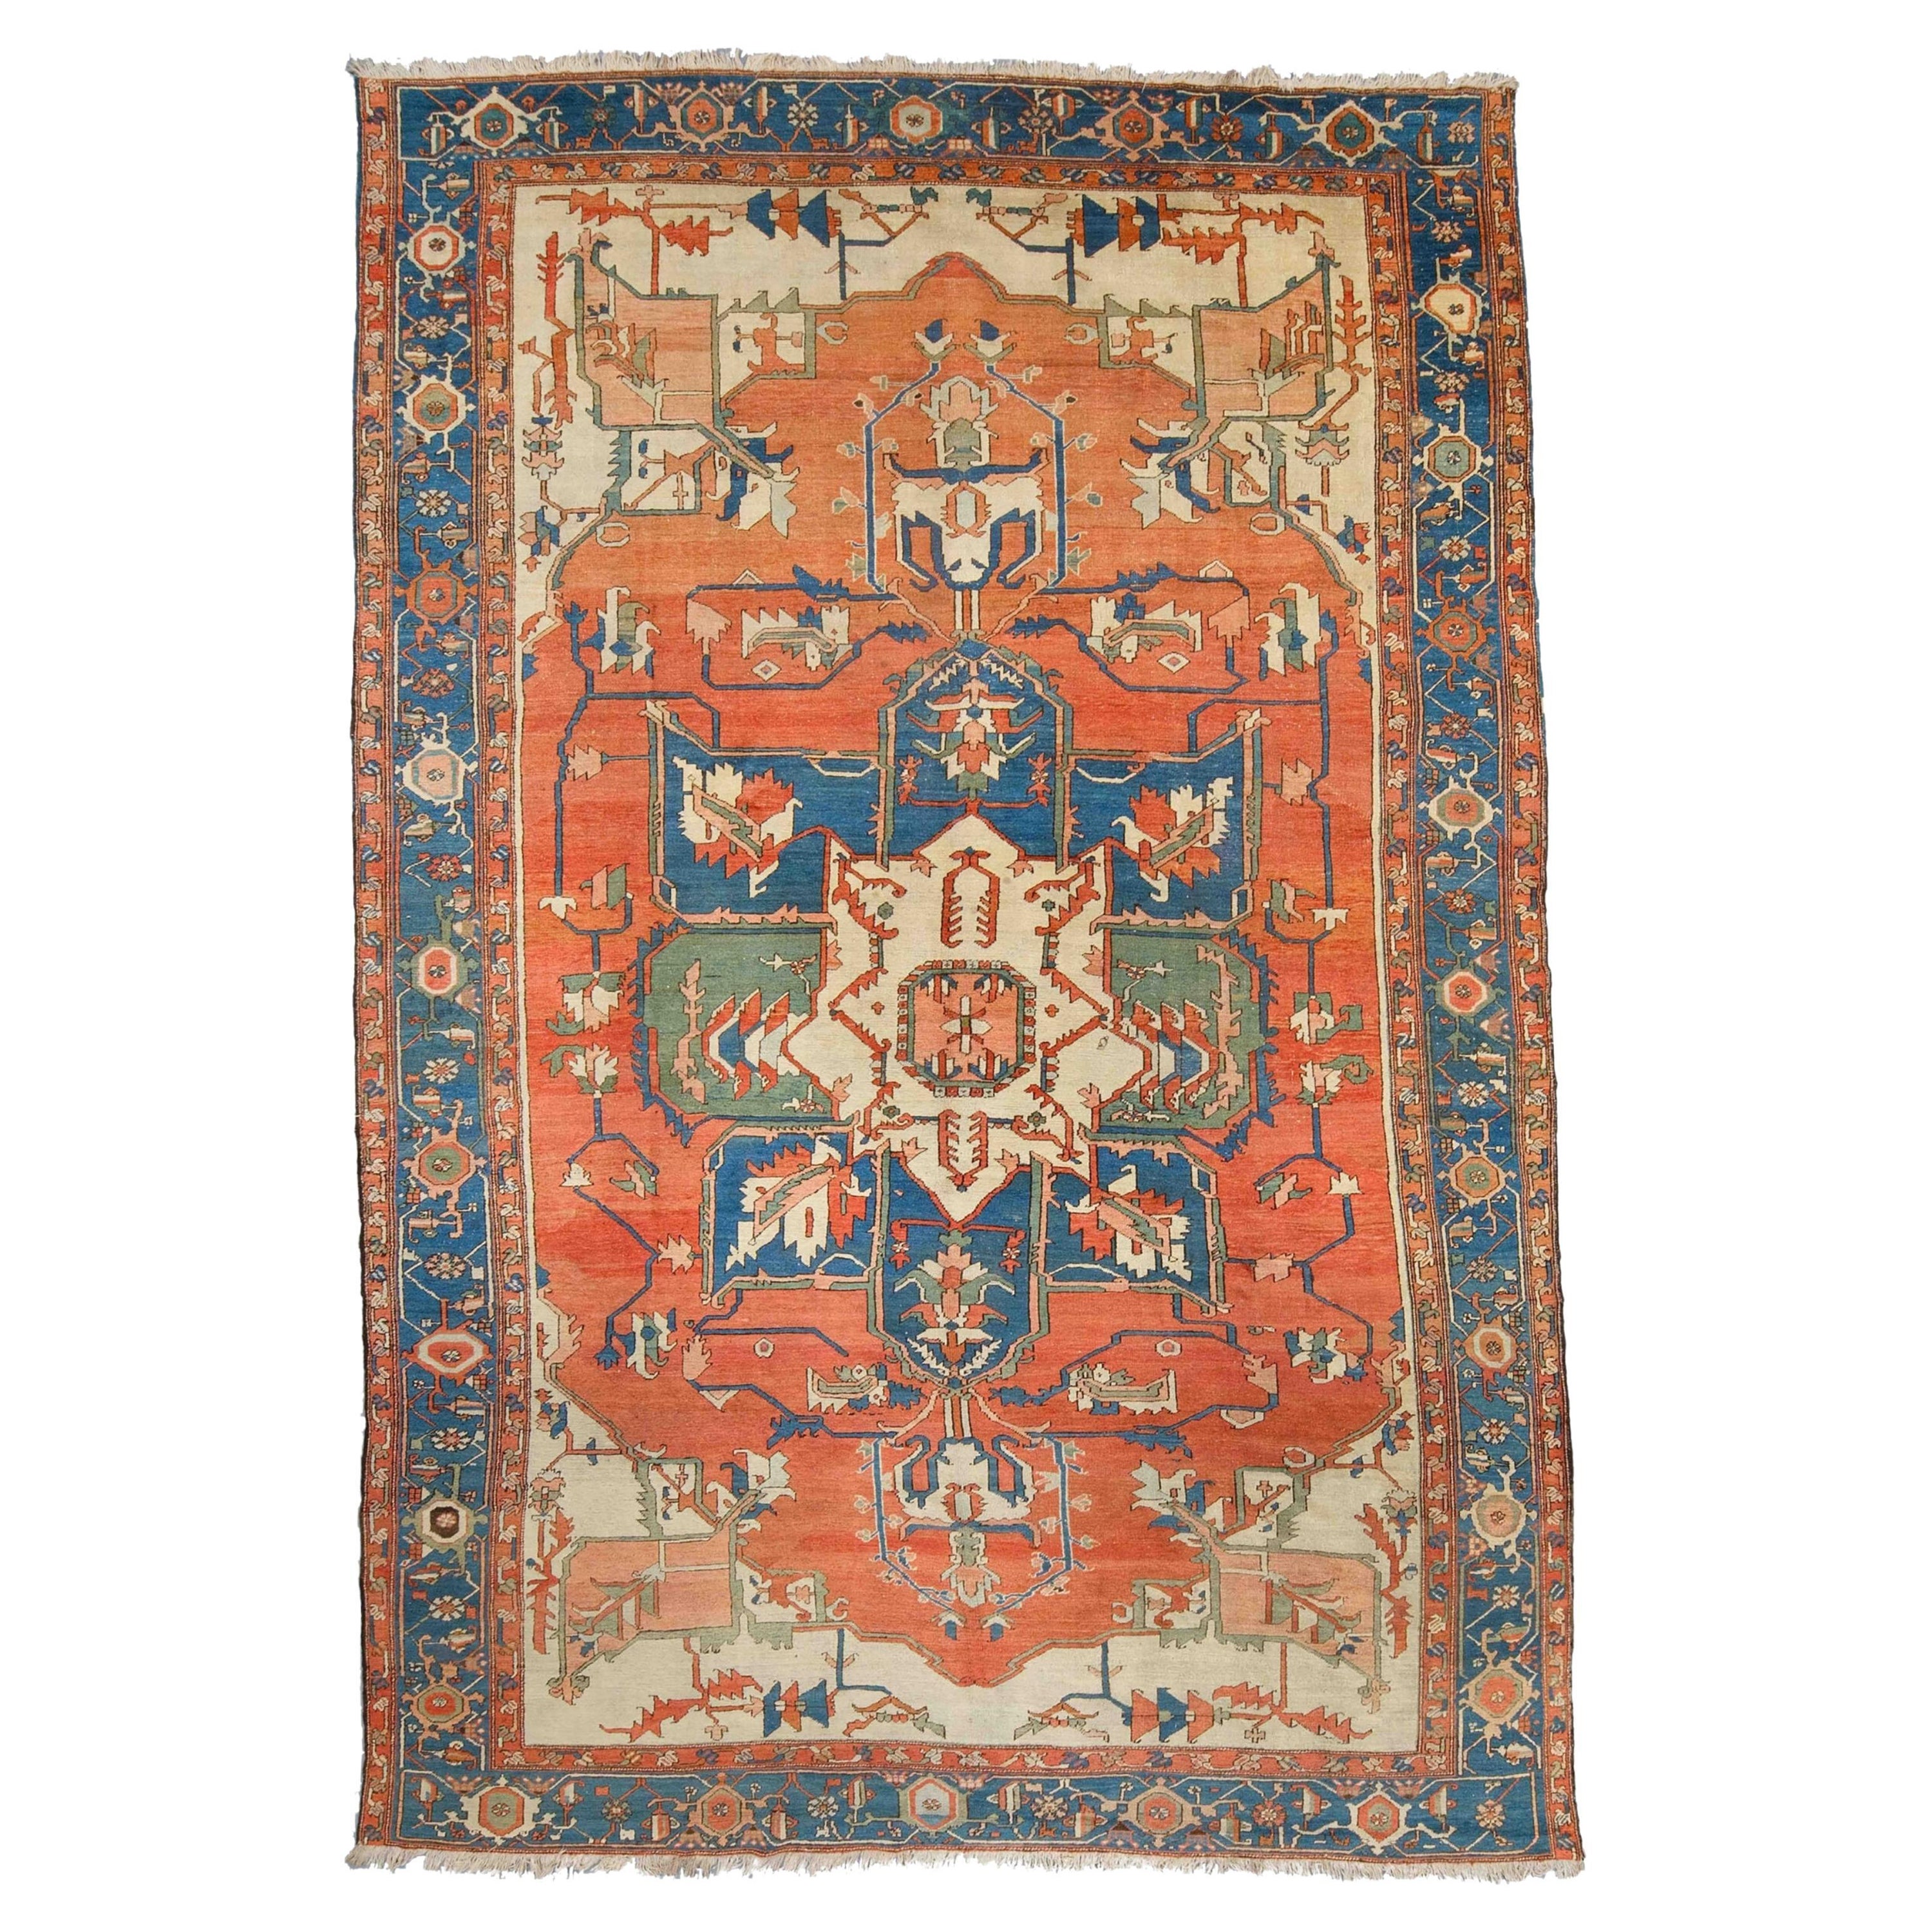 Antique Serapi Carpet - 19th Century Serapi Carpet, Antique Rug, Antique Carpet